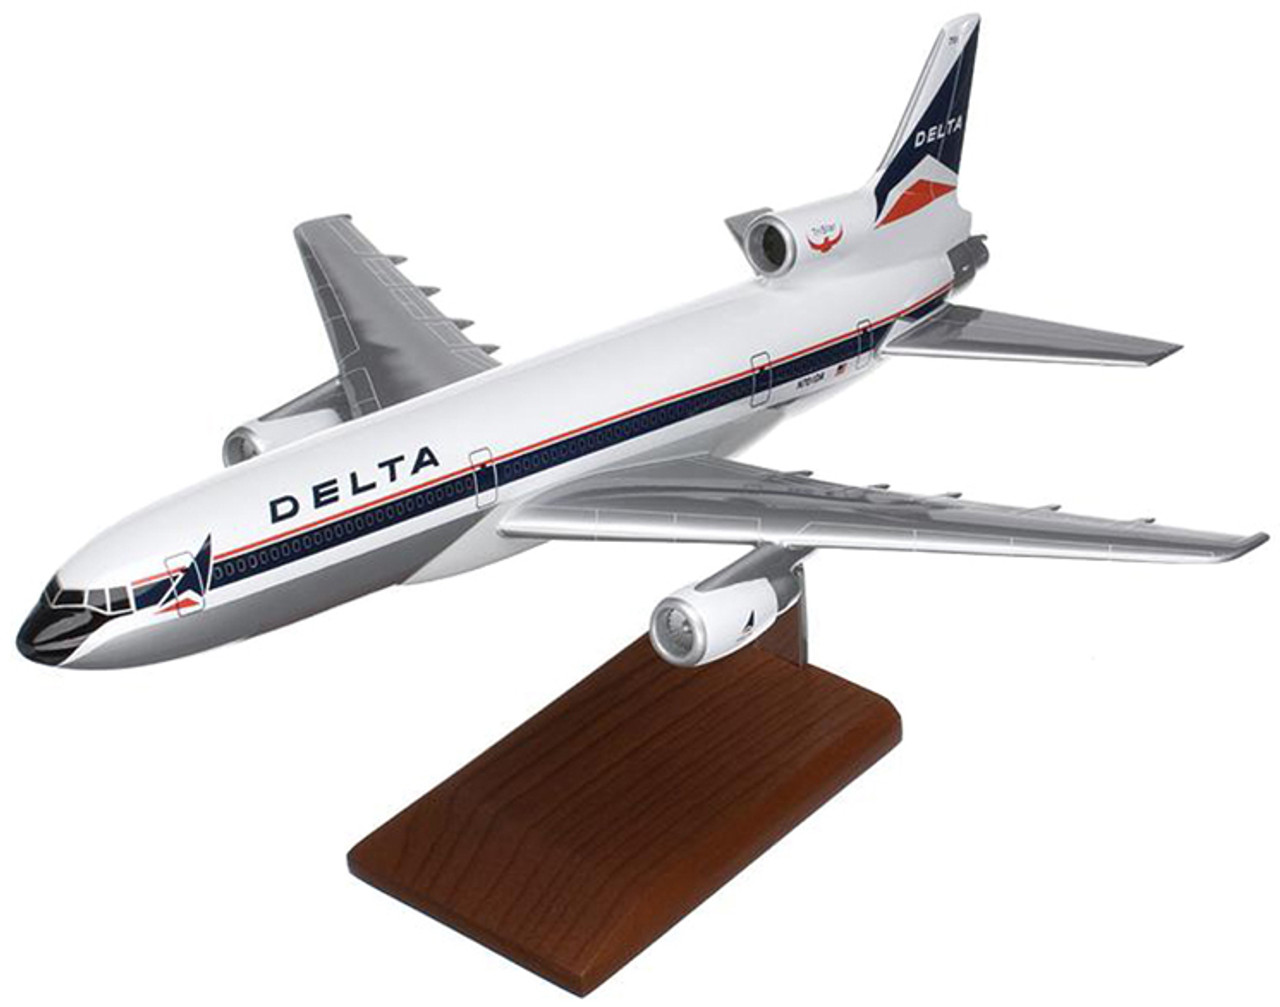 DELTA航空　TriStar long-range　機内販売モデル絵葉書はおまけです